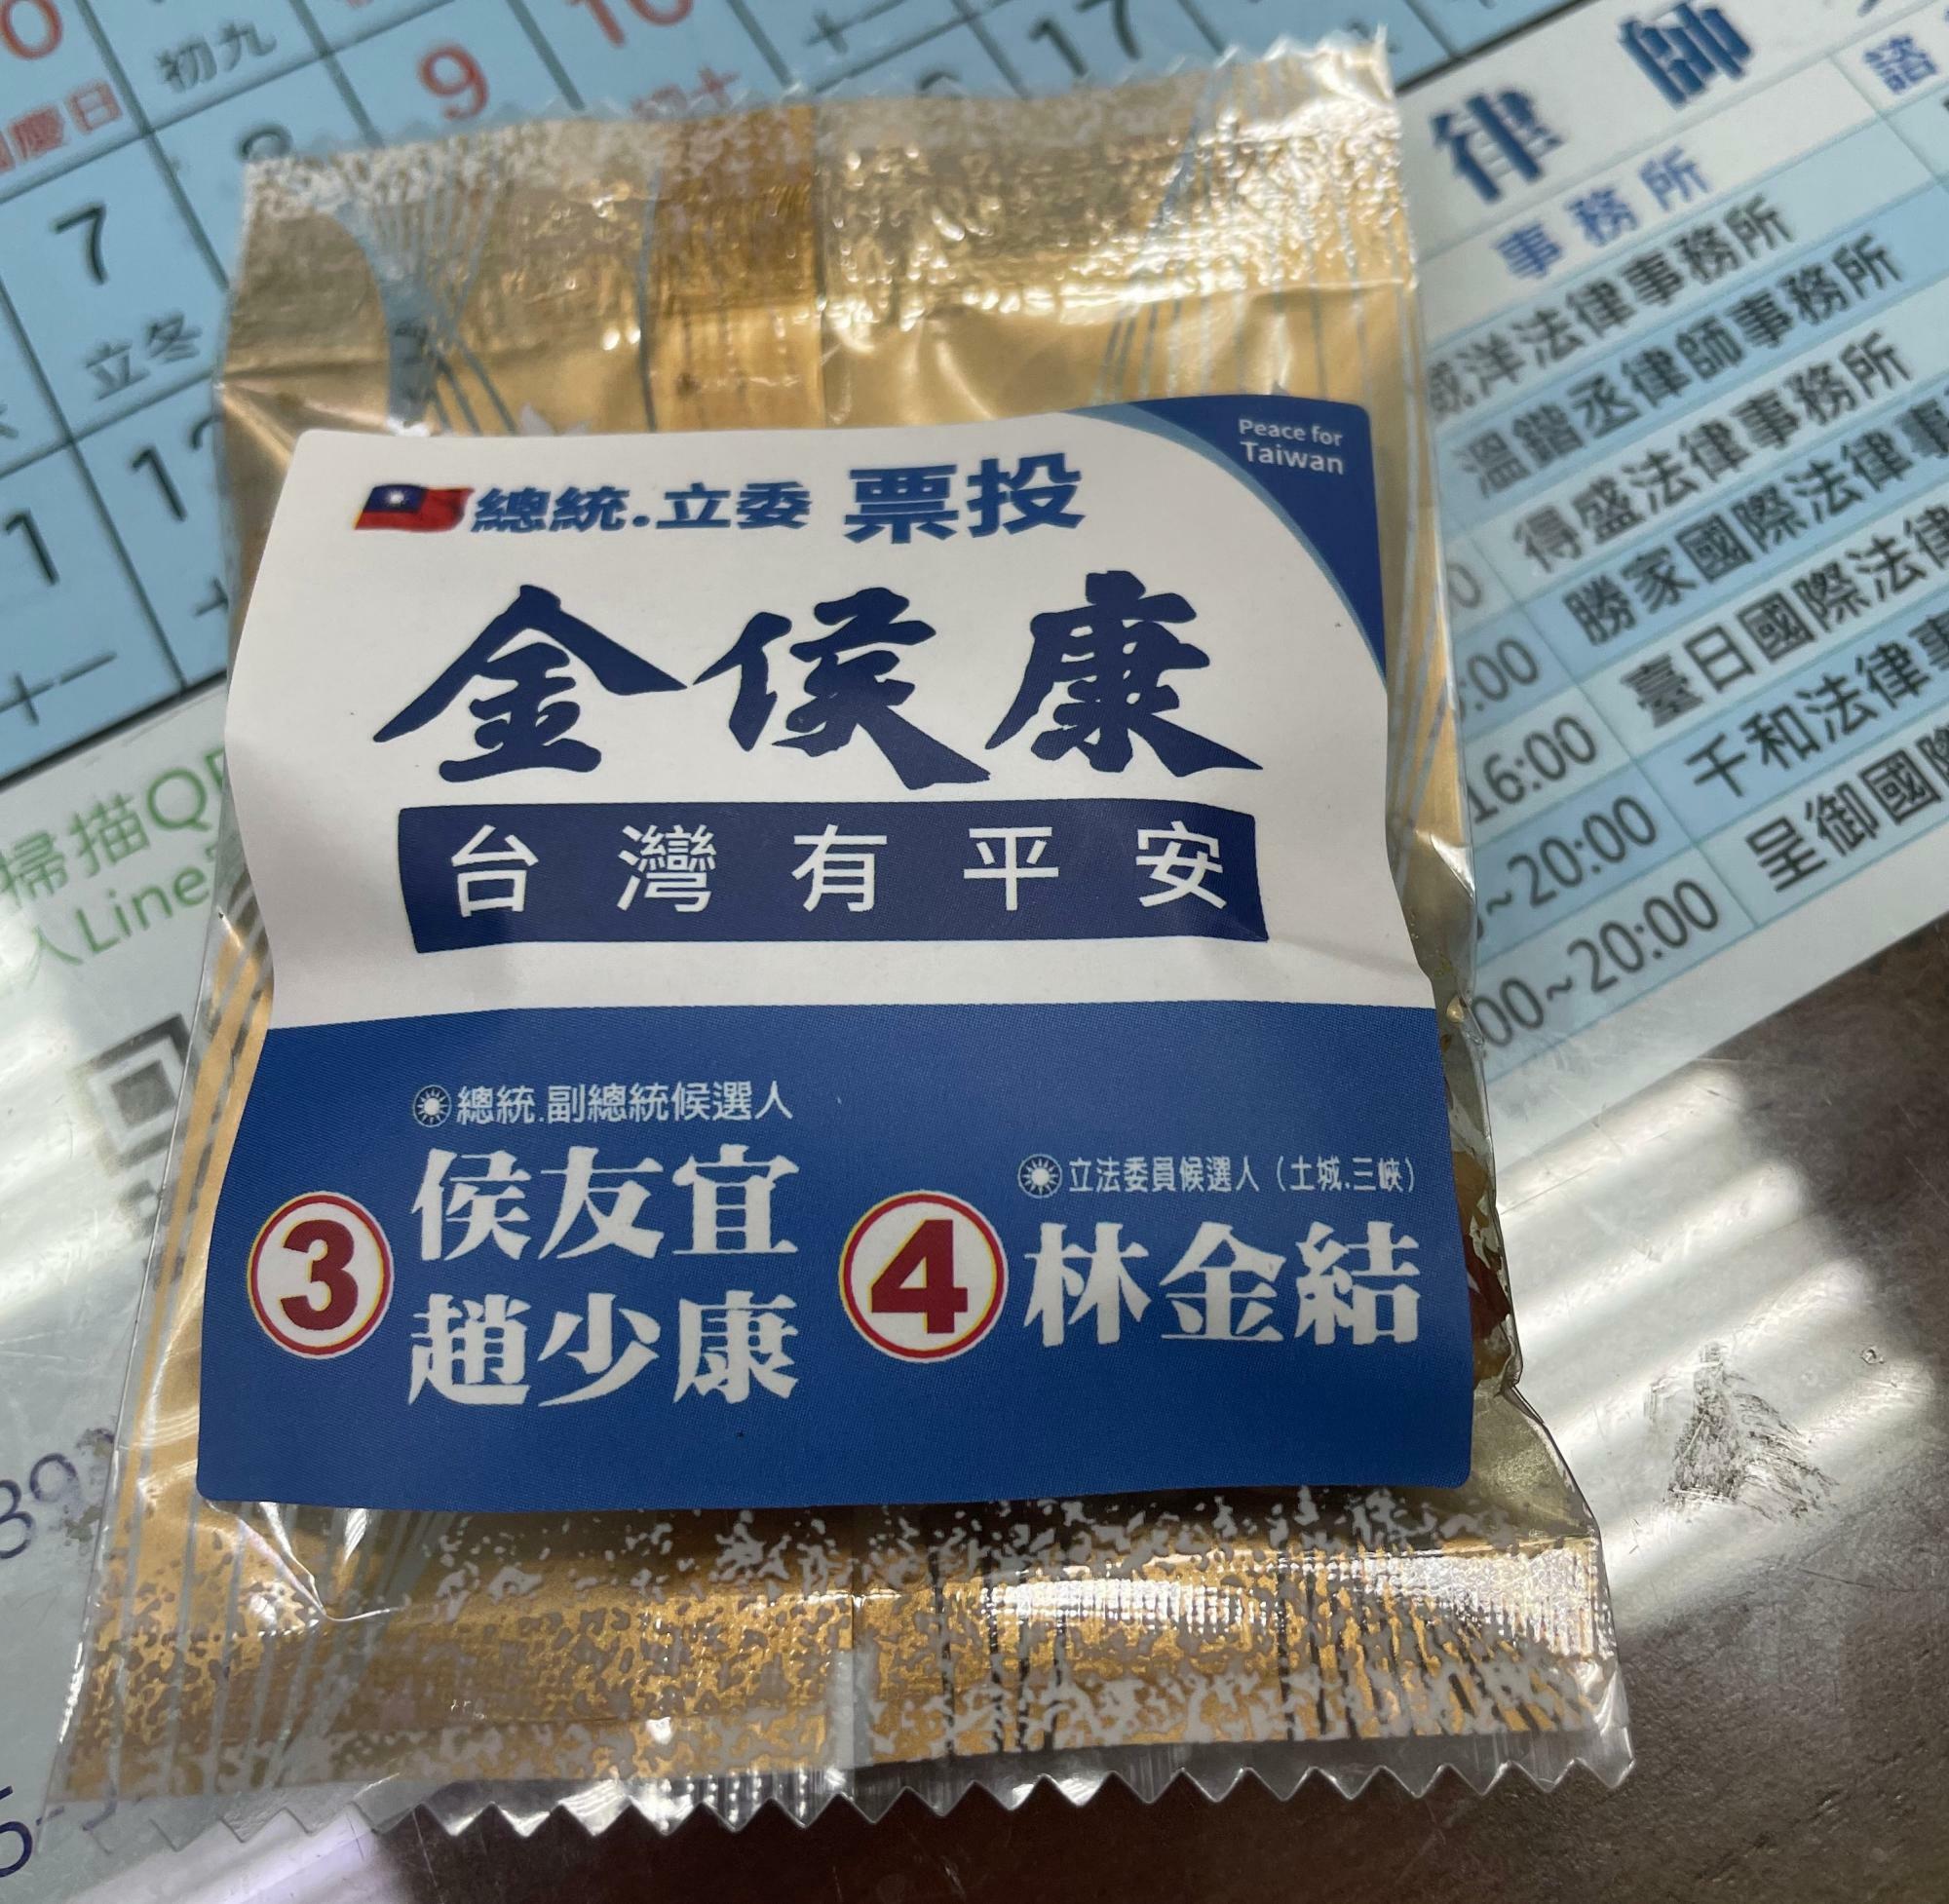 候補者の名前が入ったお菓子。台湾では選挙規制がほとんどないため、自由にモノが配布される（筆者撮影）